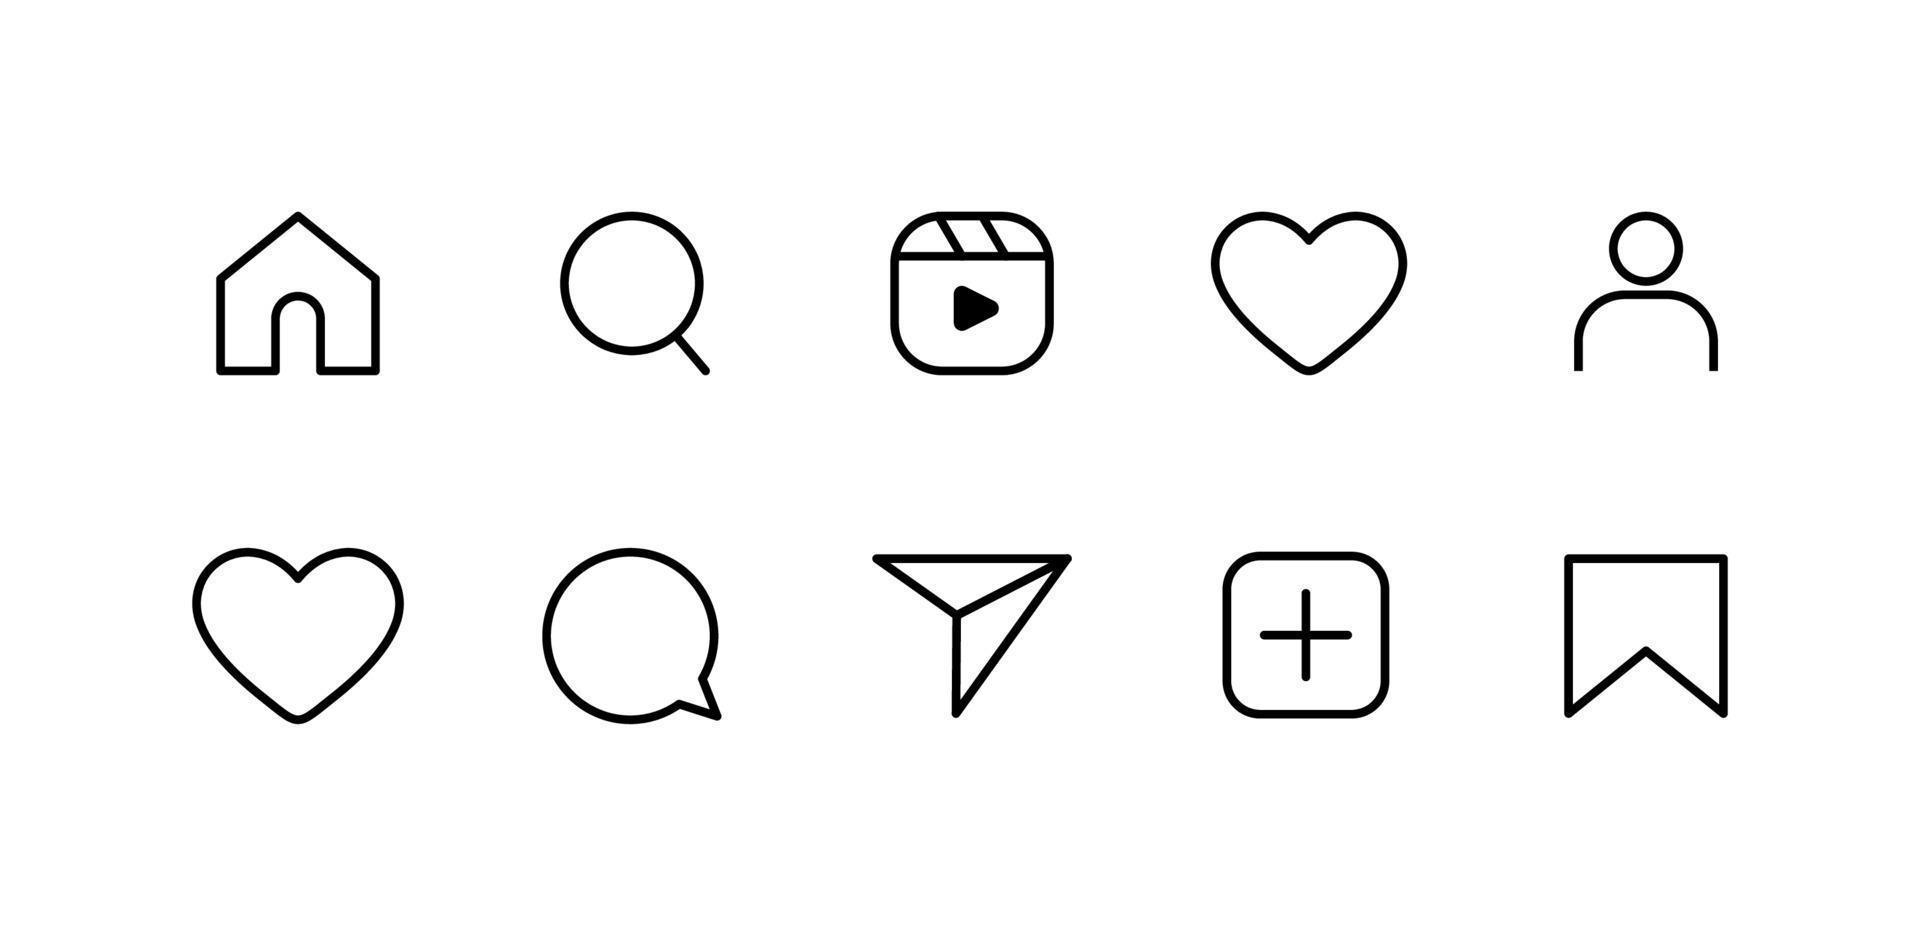 ícones planos de mídia social definem bolha de fala de notificação para compartilhar botões salvar comentário pesquisa de câmera coração home símbolos e ícones da web vetor grátis